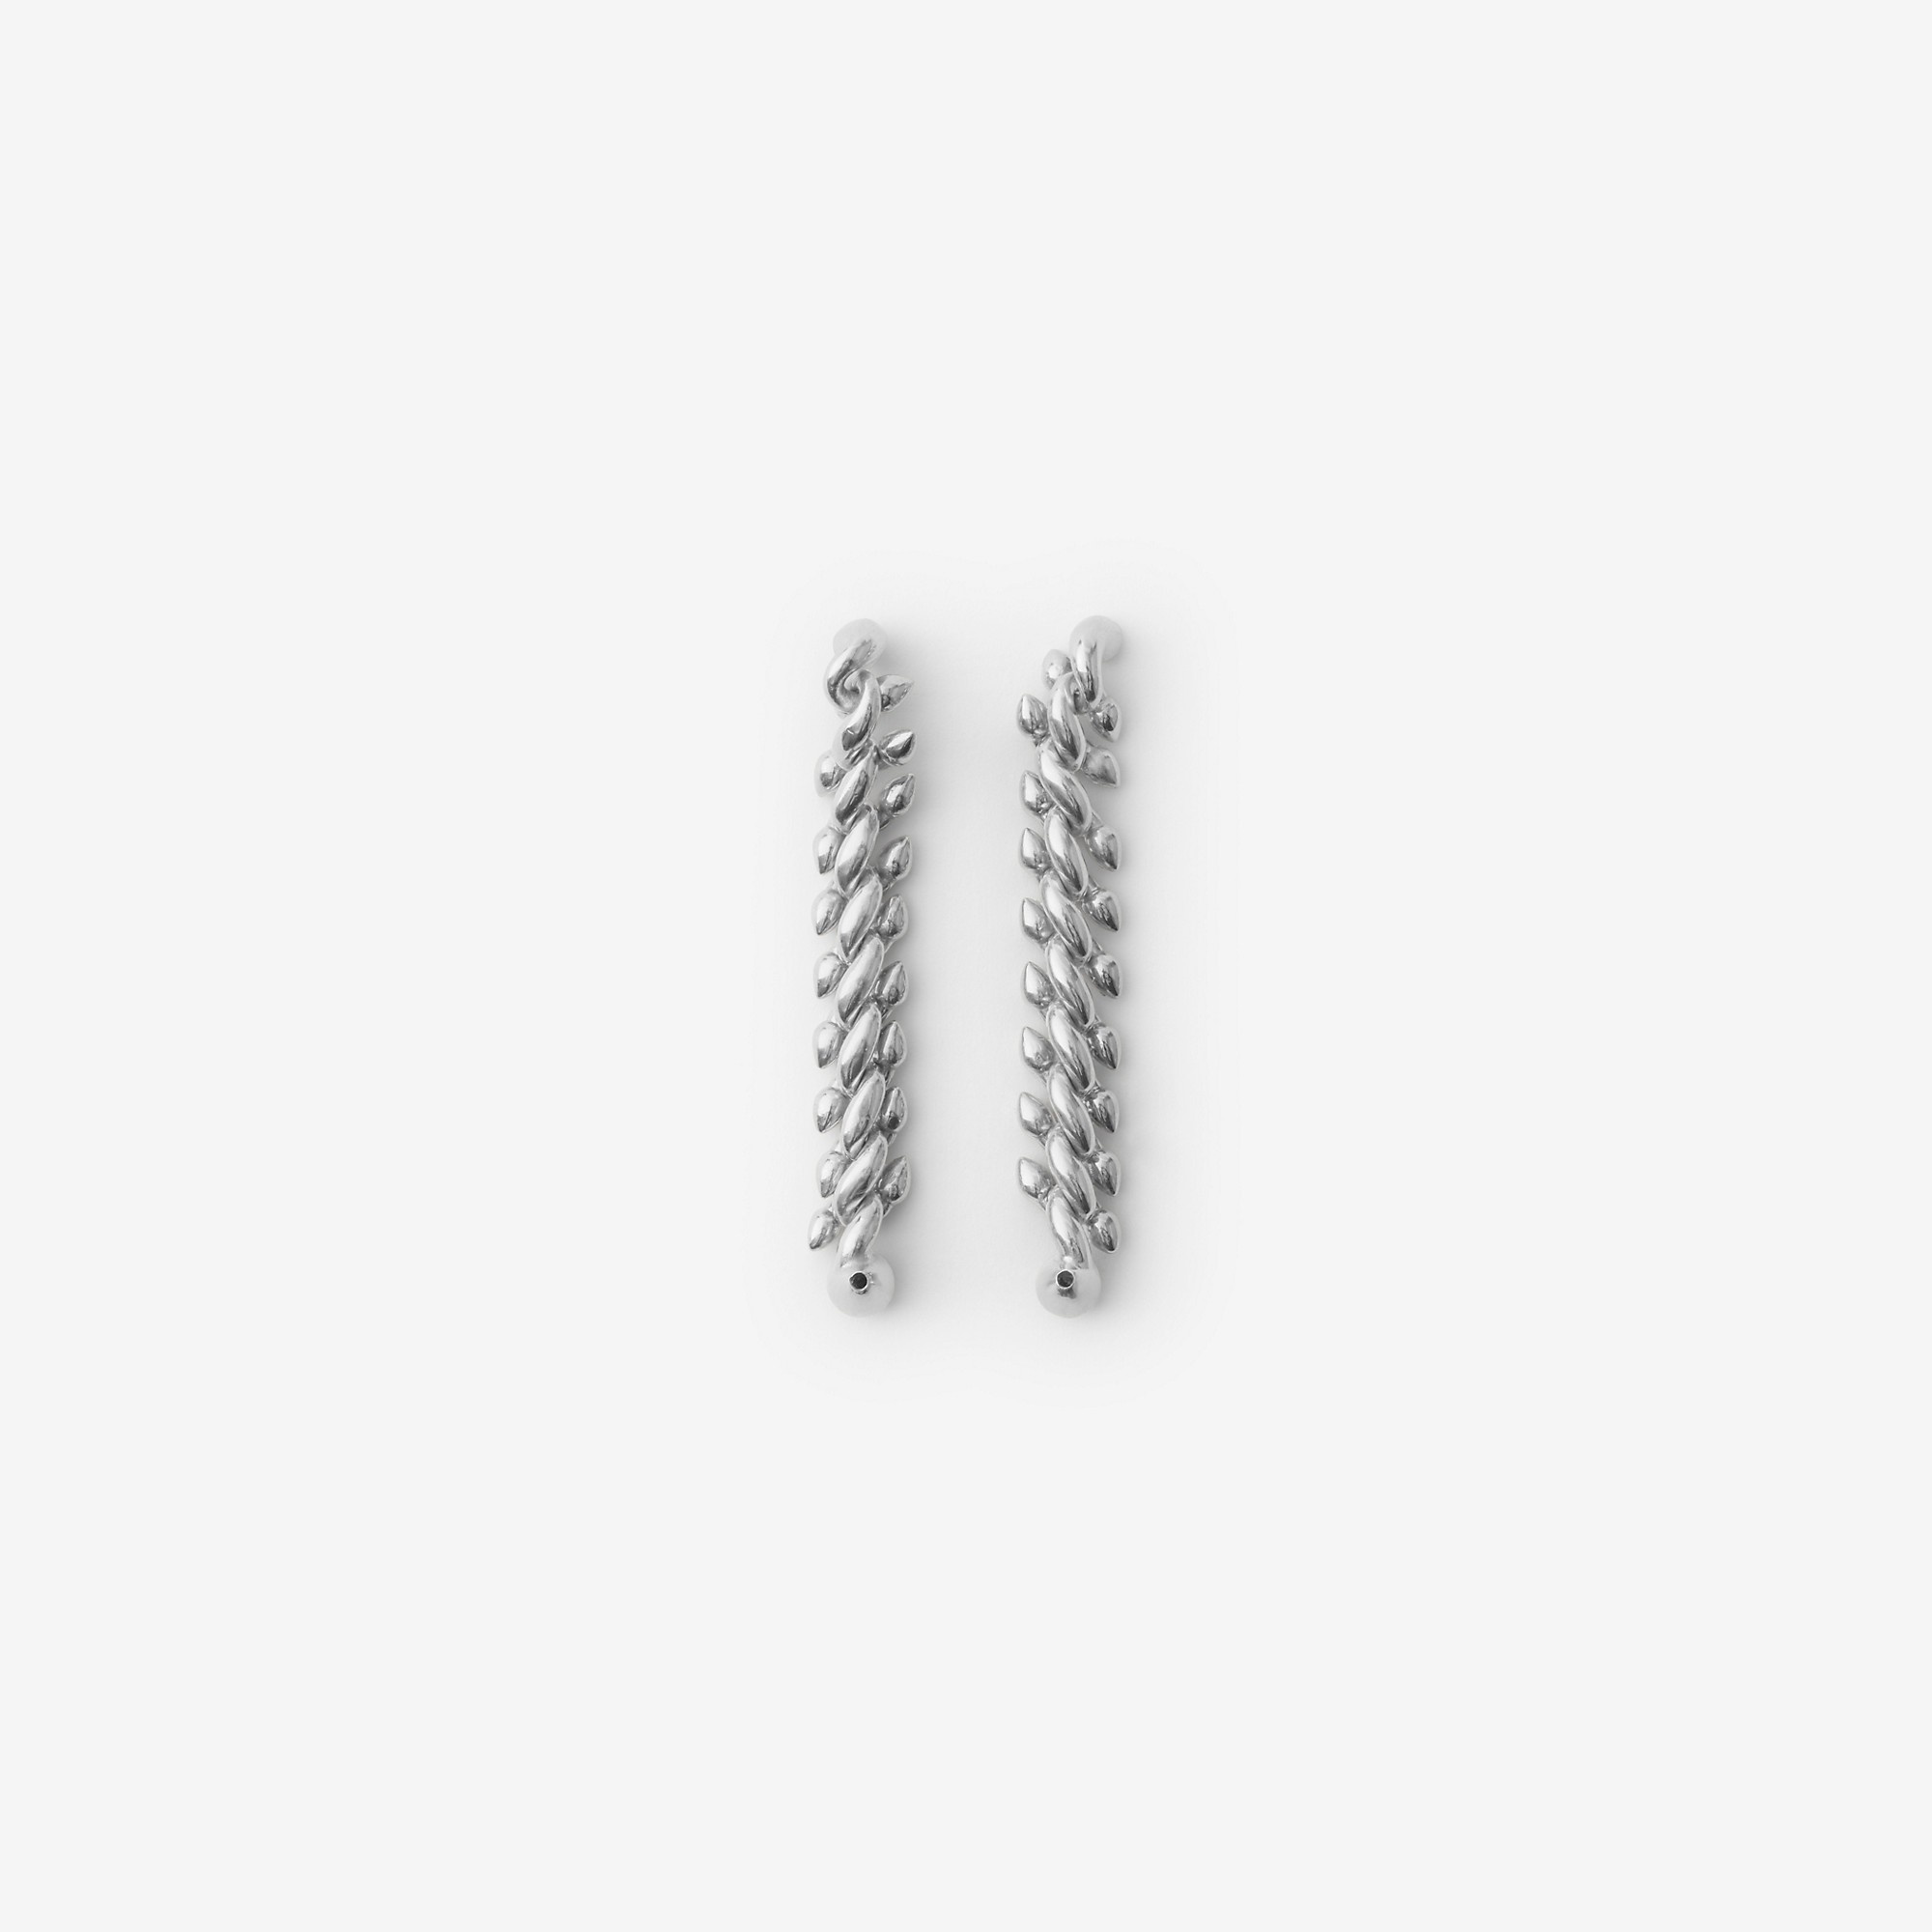 Silver Spear Chain Earrings - 2